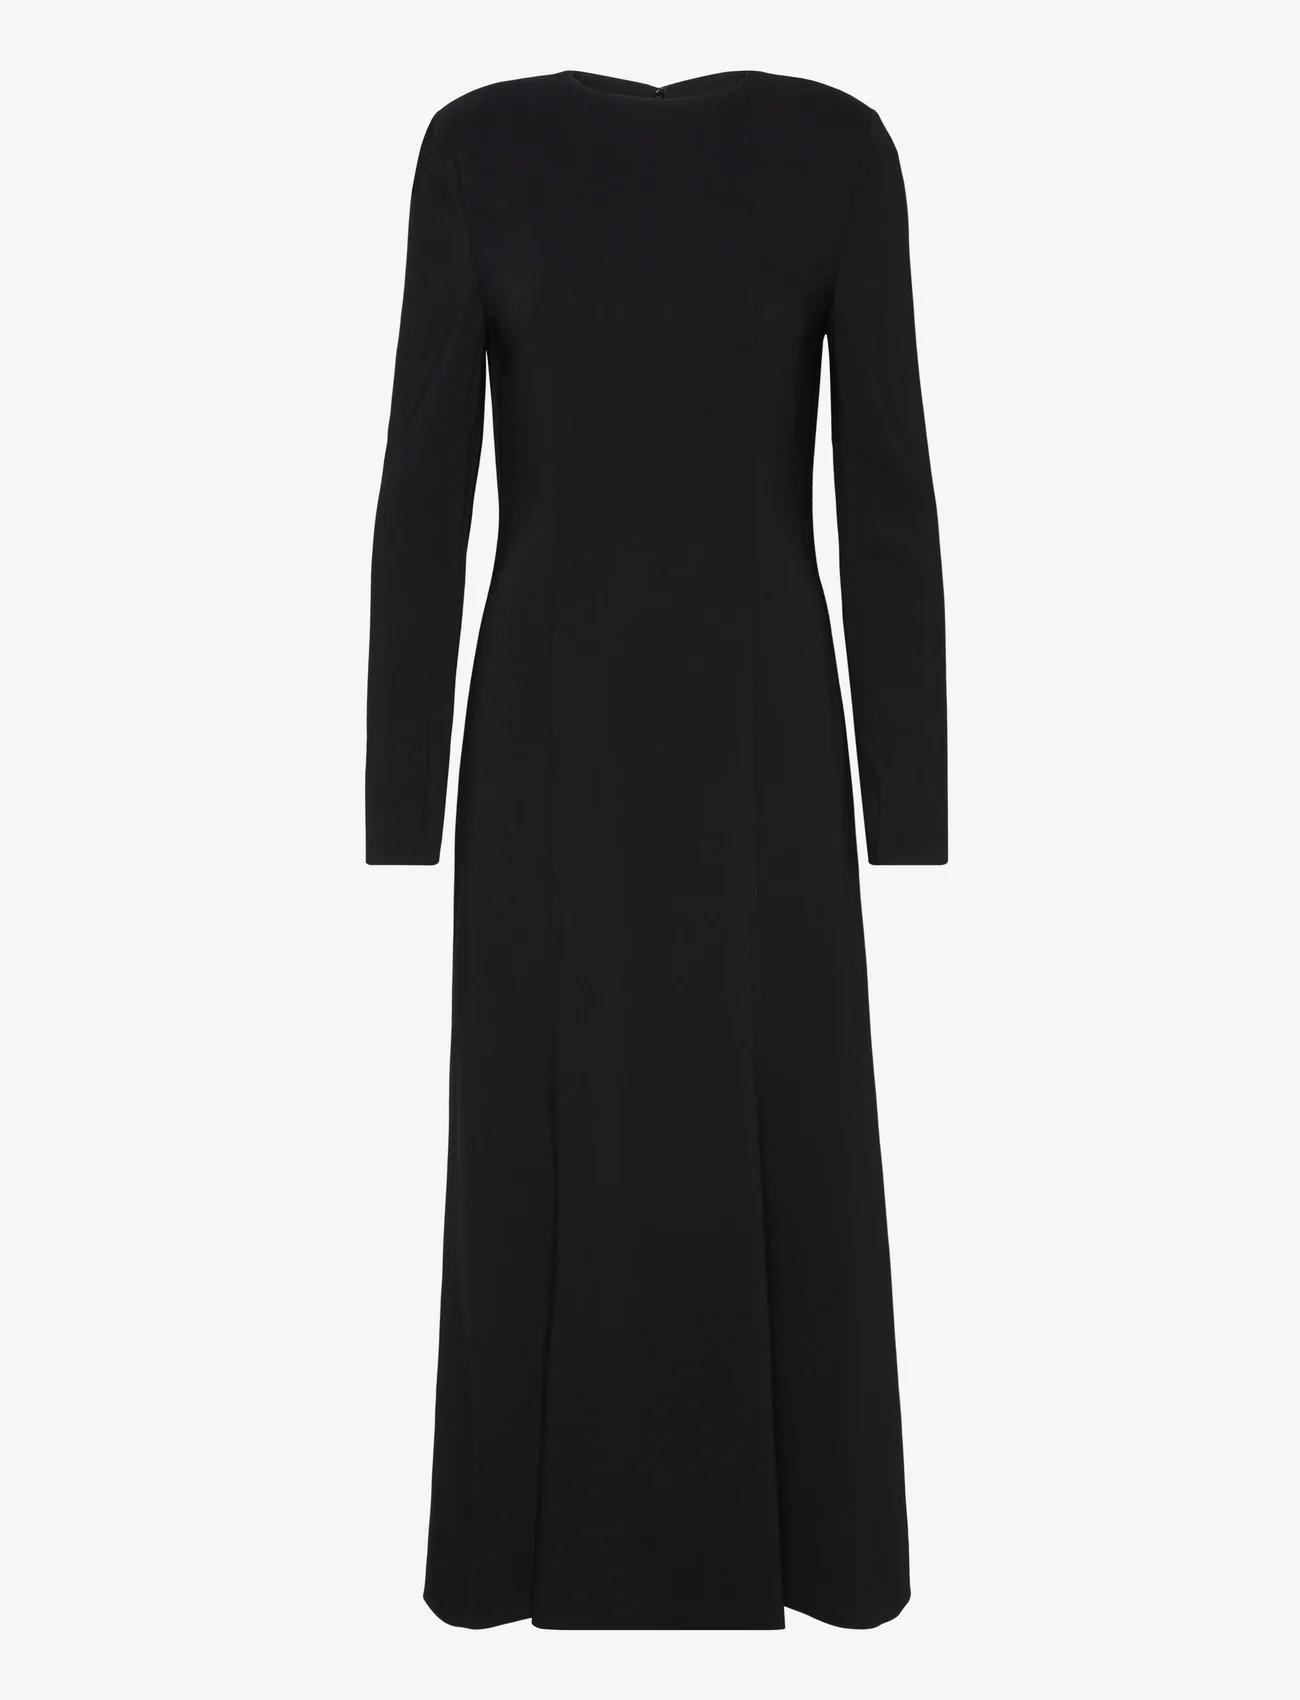 RODEBJER - Rodebjer Isonda - feestelijke kleding voor outlet-prijzen - black - 0